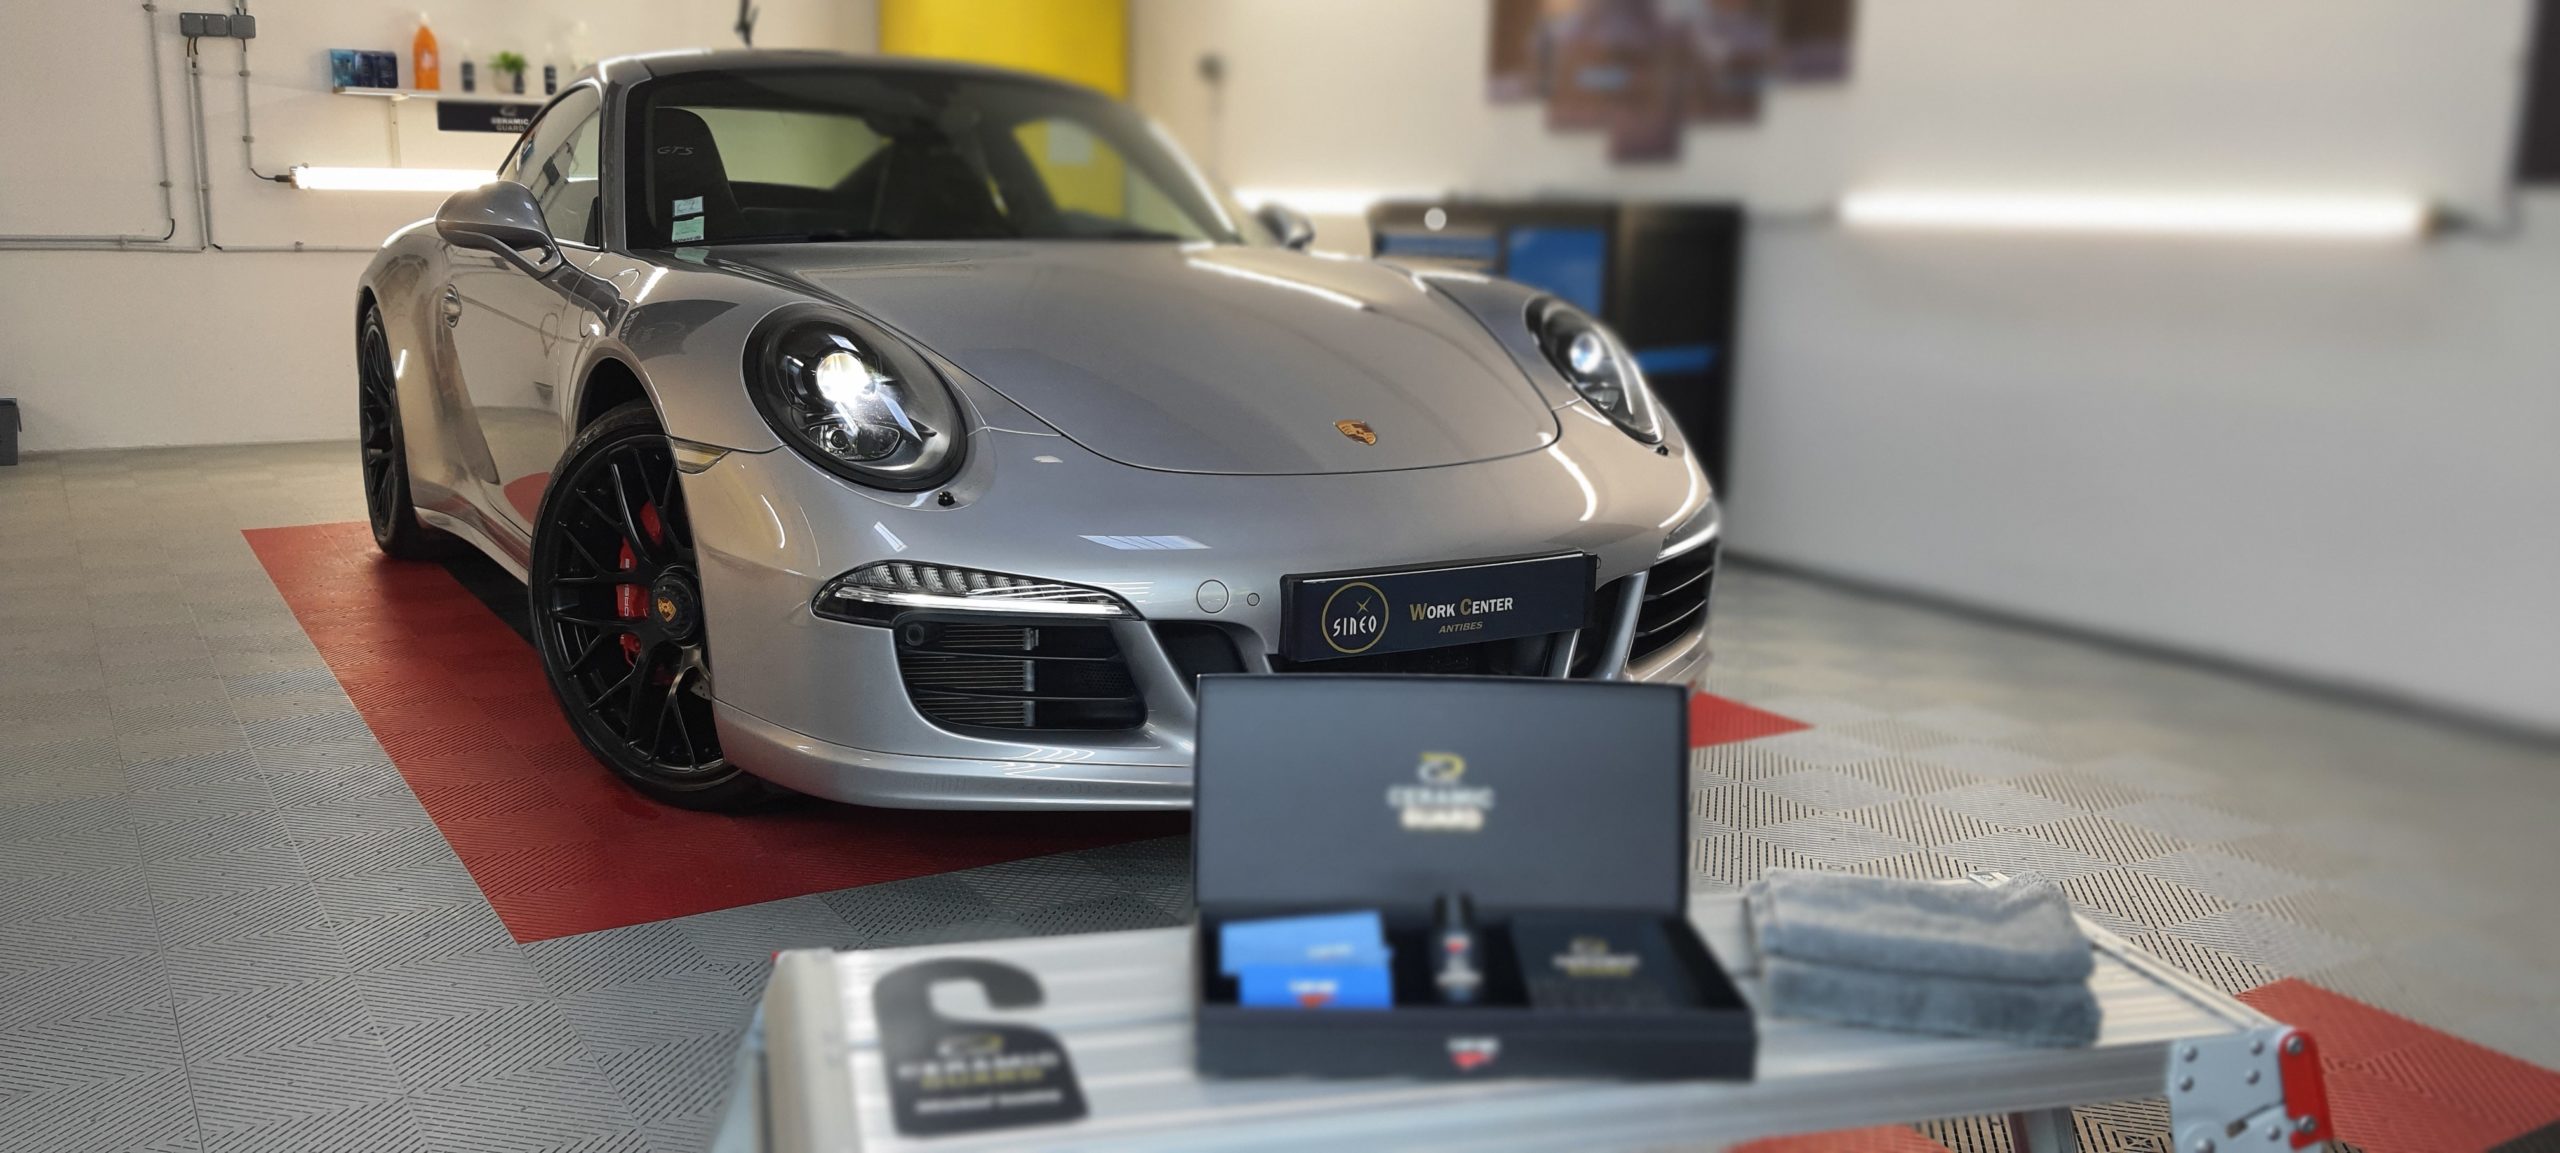 Application du Traitement carrosserie Céramic-Guard Cartec garantie 3 ans sur Porsche 911 GTS Carrera 4 type 991